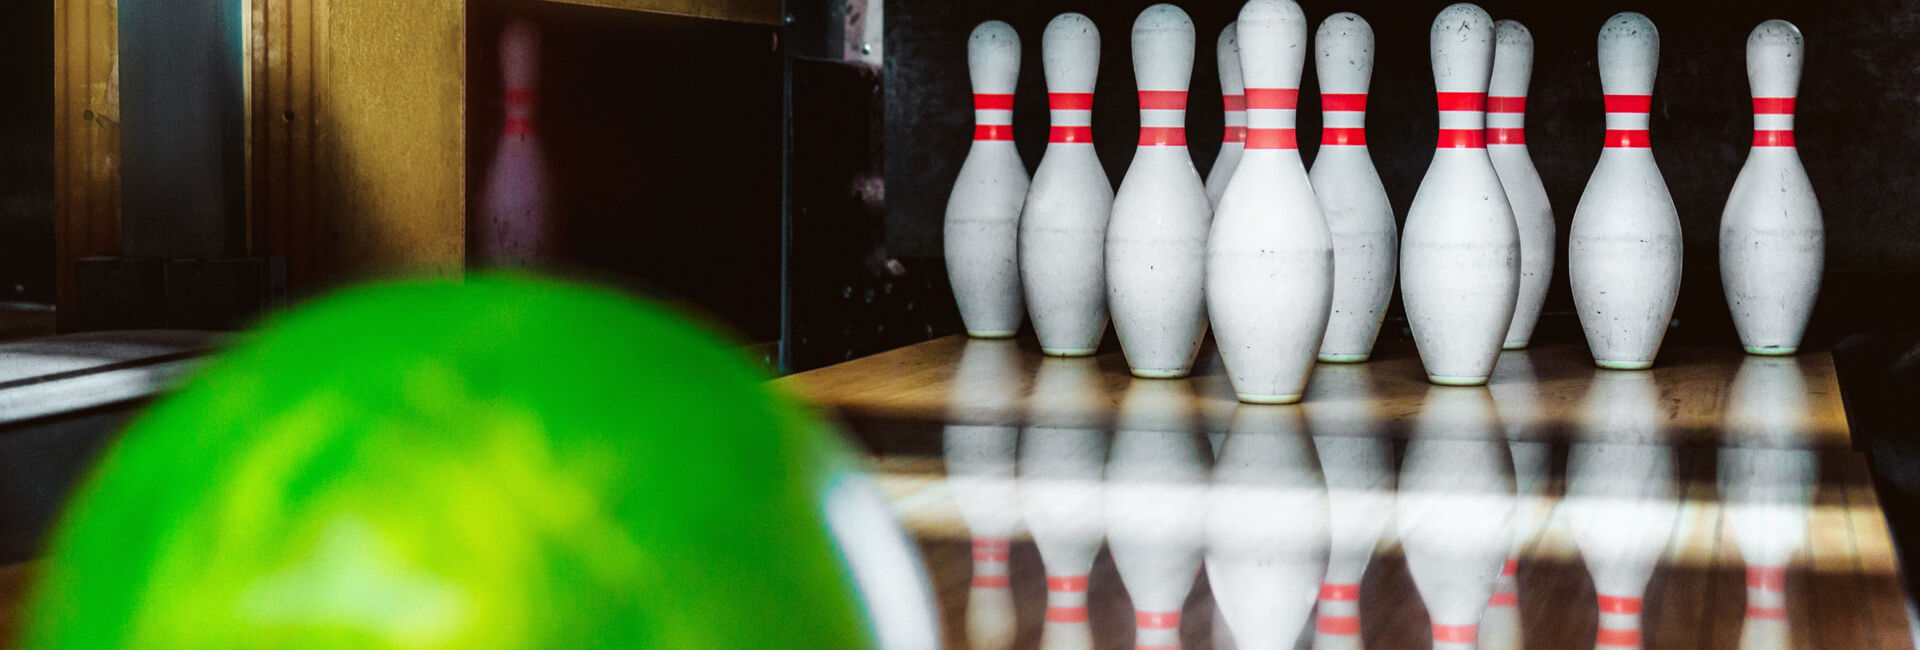 Green bowling ball and bowling pins - Gasterij 't Karrewiel